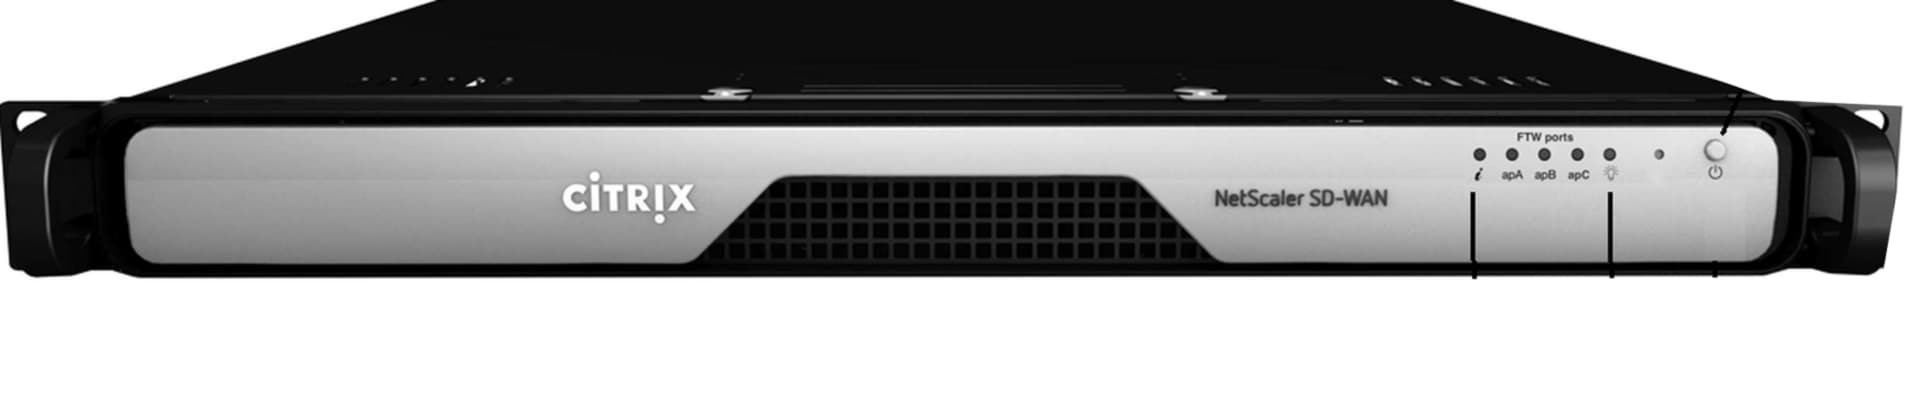 Citrix NetScaler SD-WAN 410 20Mbps Standard Appliance